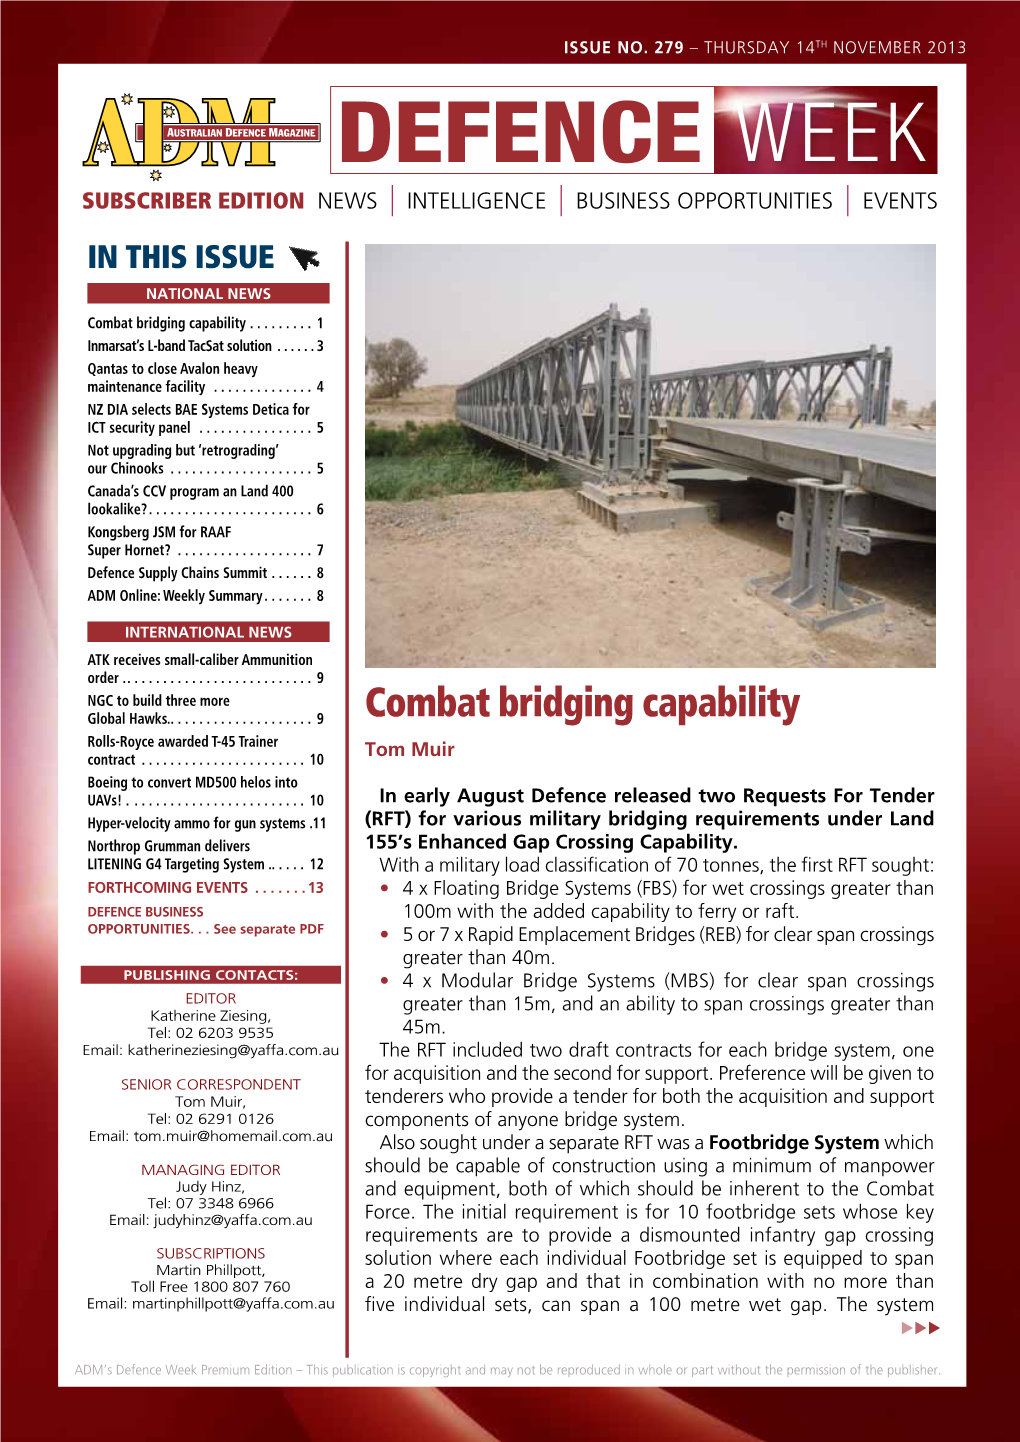 Combat Bridging Capability